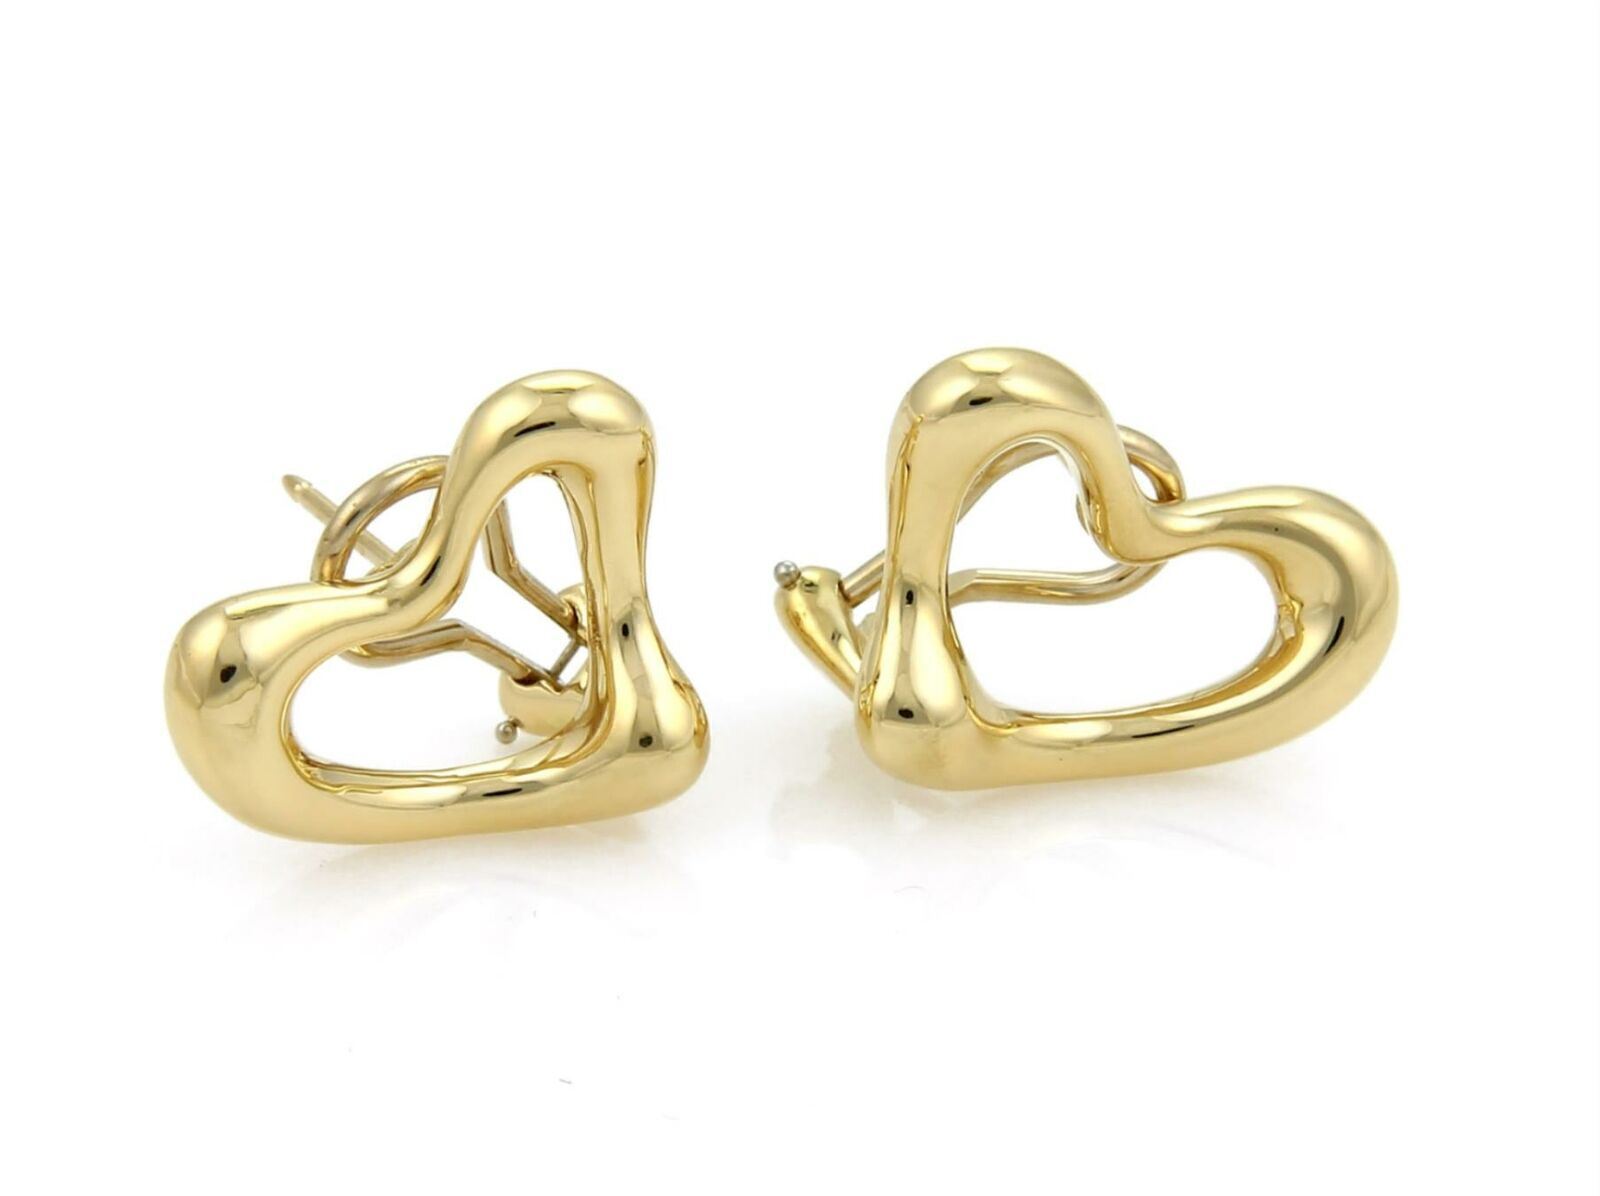 Tiffany & Co. Peretti 18k Yellow Gold Open Heart Post Clip Earrings | Earrings | catalog, Designer Jewelry, Earrings, Elsa Peretti, Tiffany & Co. | Tiffany & Co.